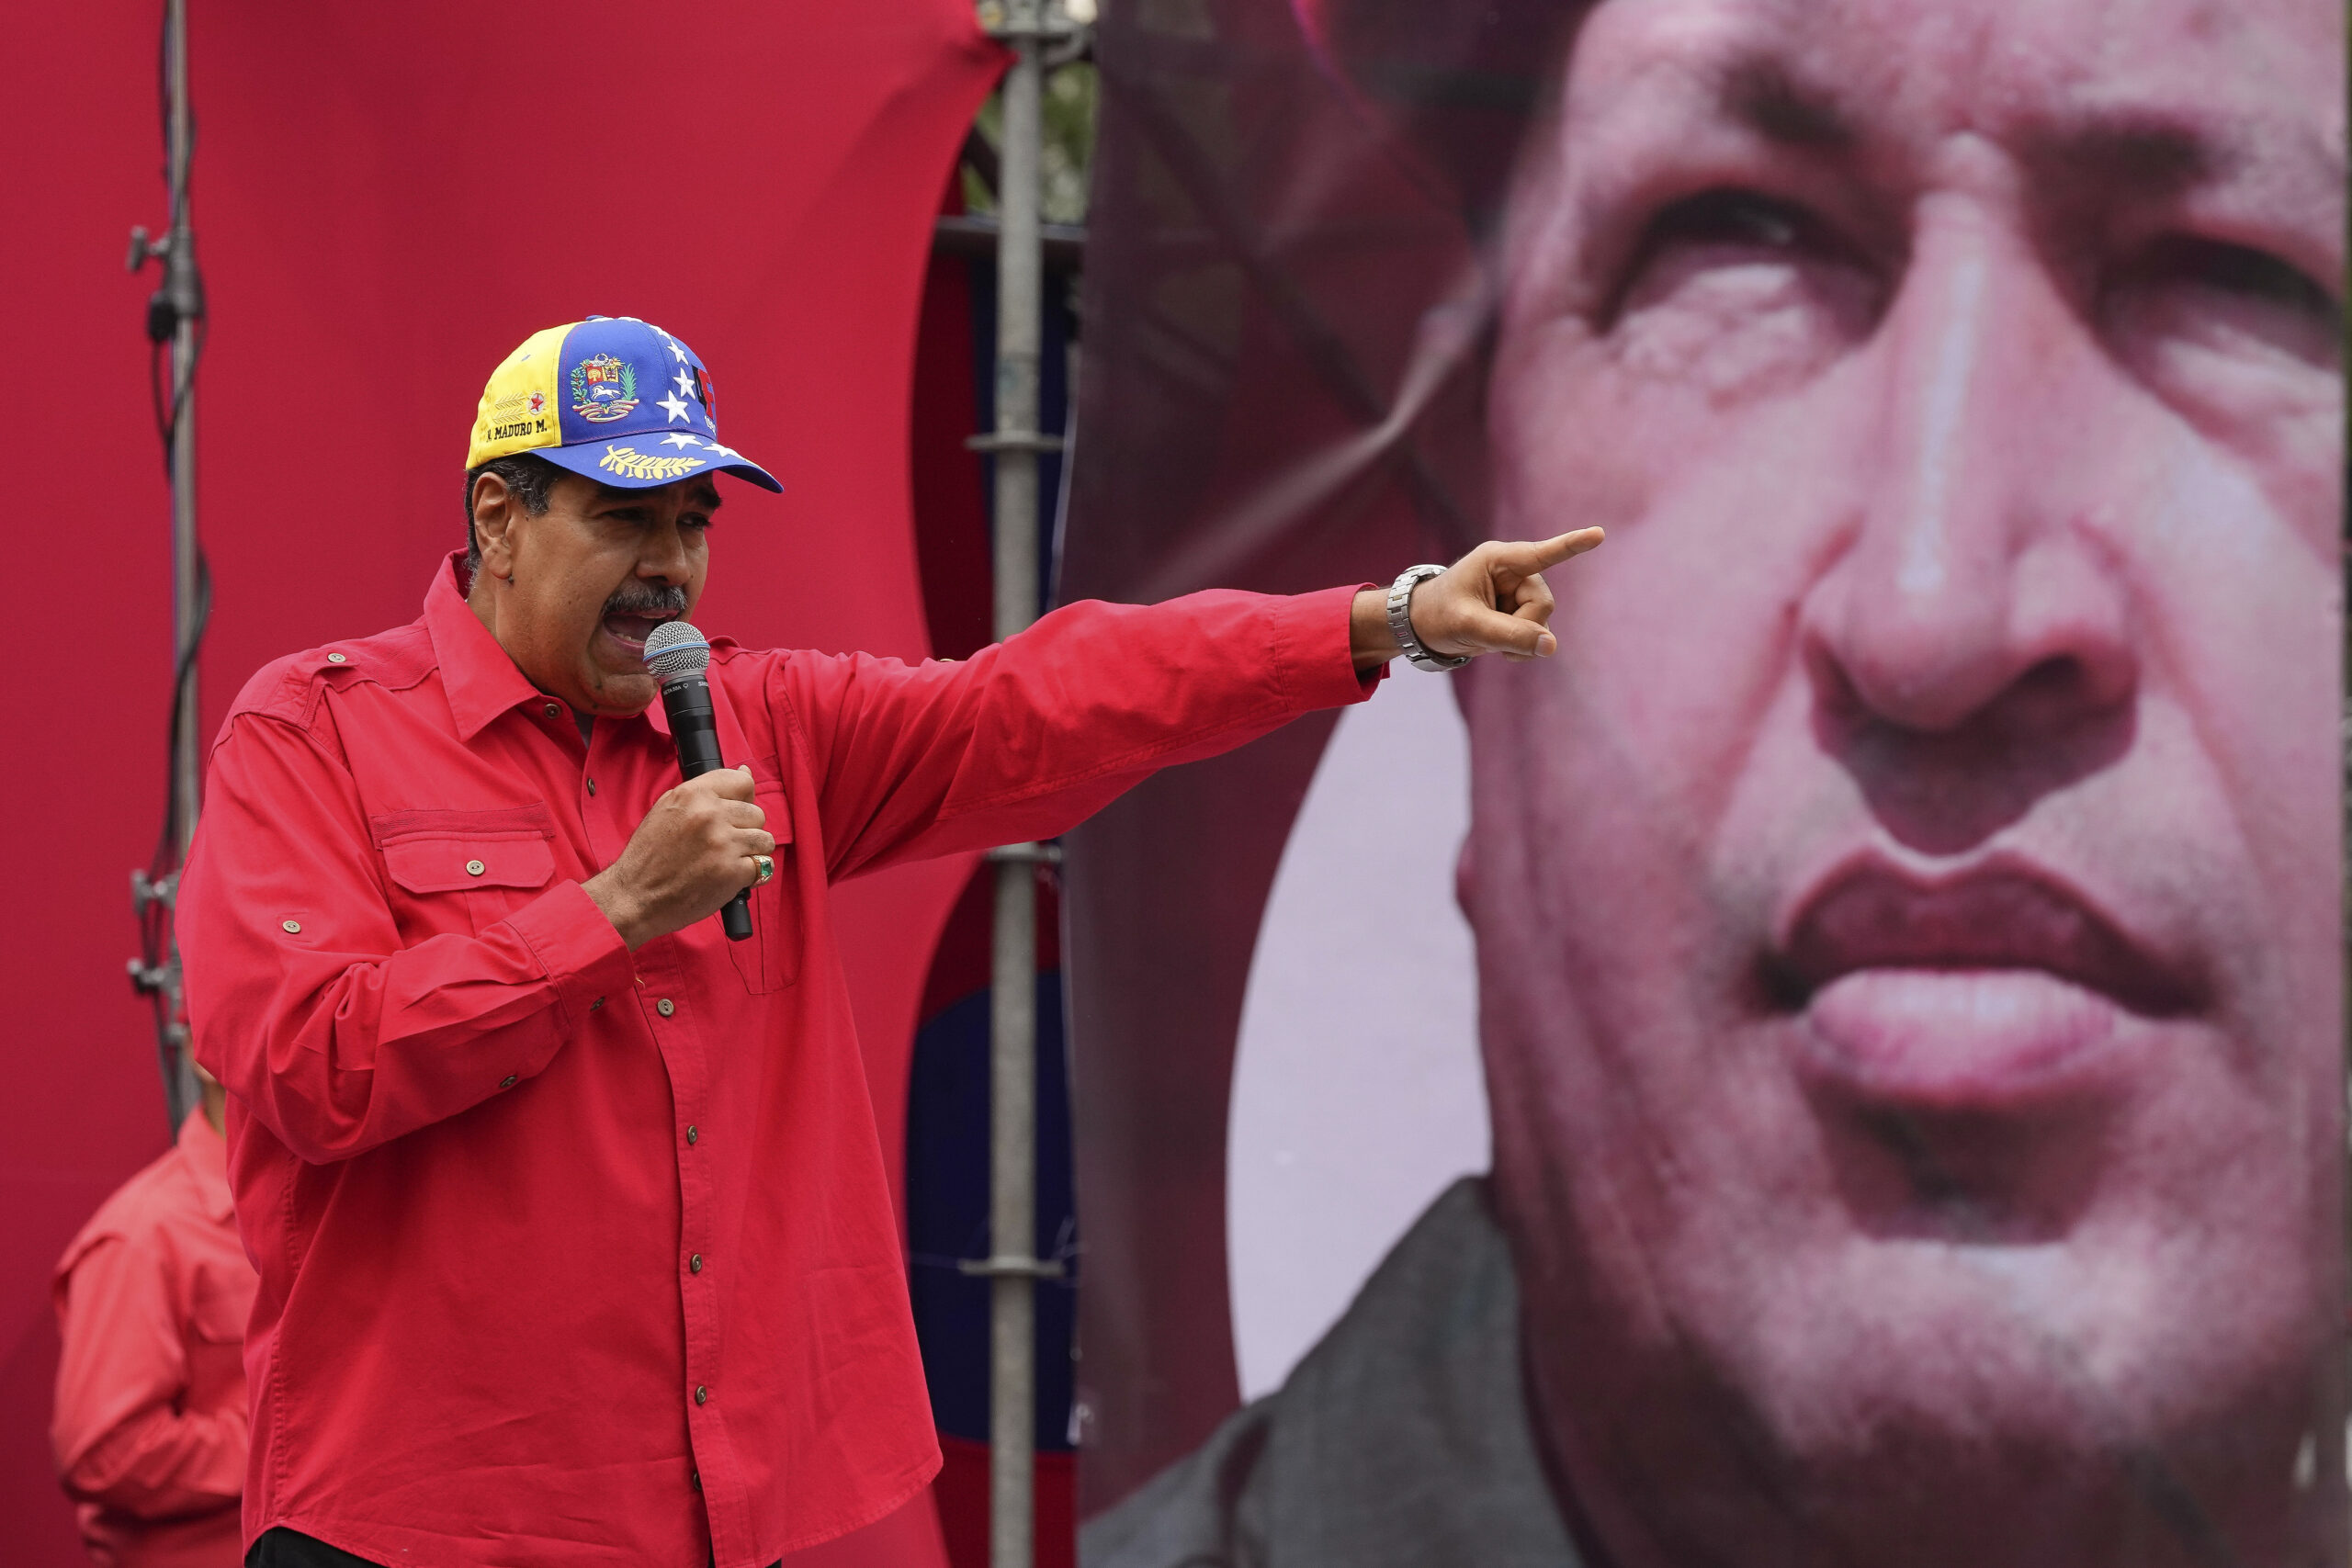 La religión se cuela en la campaña electoral en Venezuela: “La politización de ciertos símbolos siempre es preocupante” – AlbertoNews – Periodismo sin censura